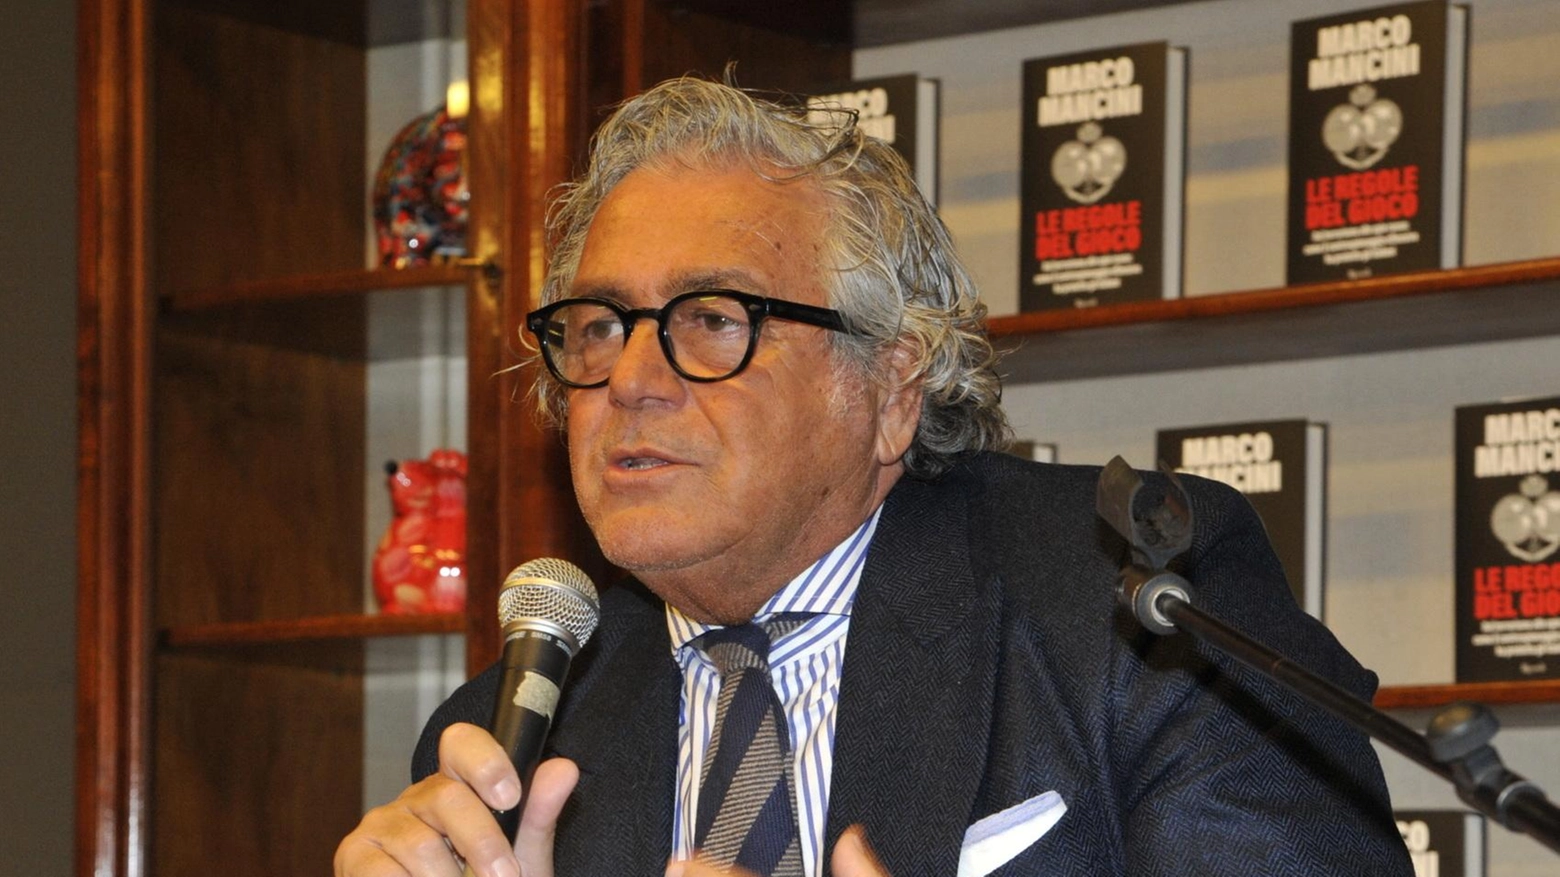 L'ex agente segreto Marco Mancini racconterà la storia del controspionaggio italiano a Urbino, presentando il suo libro "Le regole del gioco". L'incontro si terrà domani pomeriggio alle 17 presso la sala del Maniscalco.